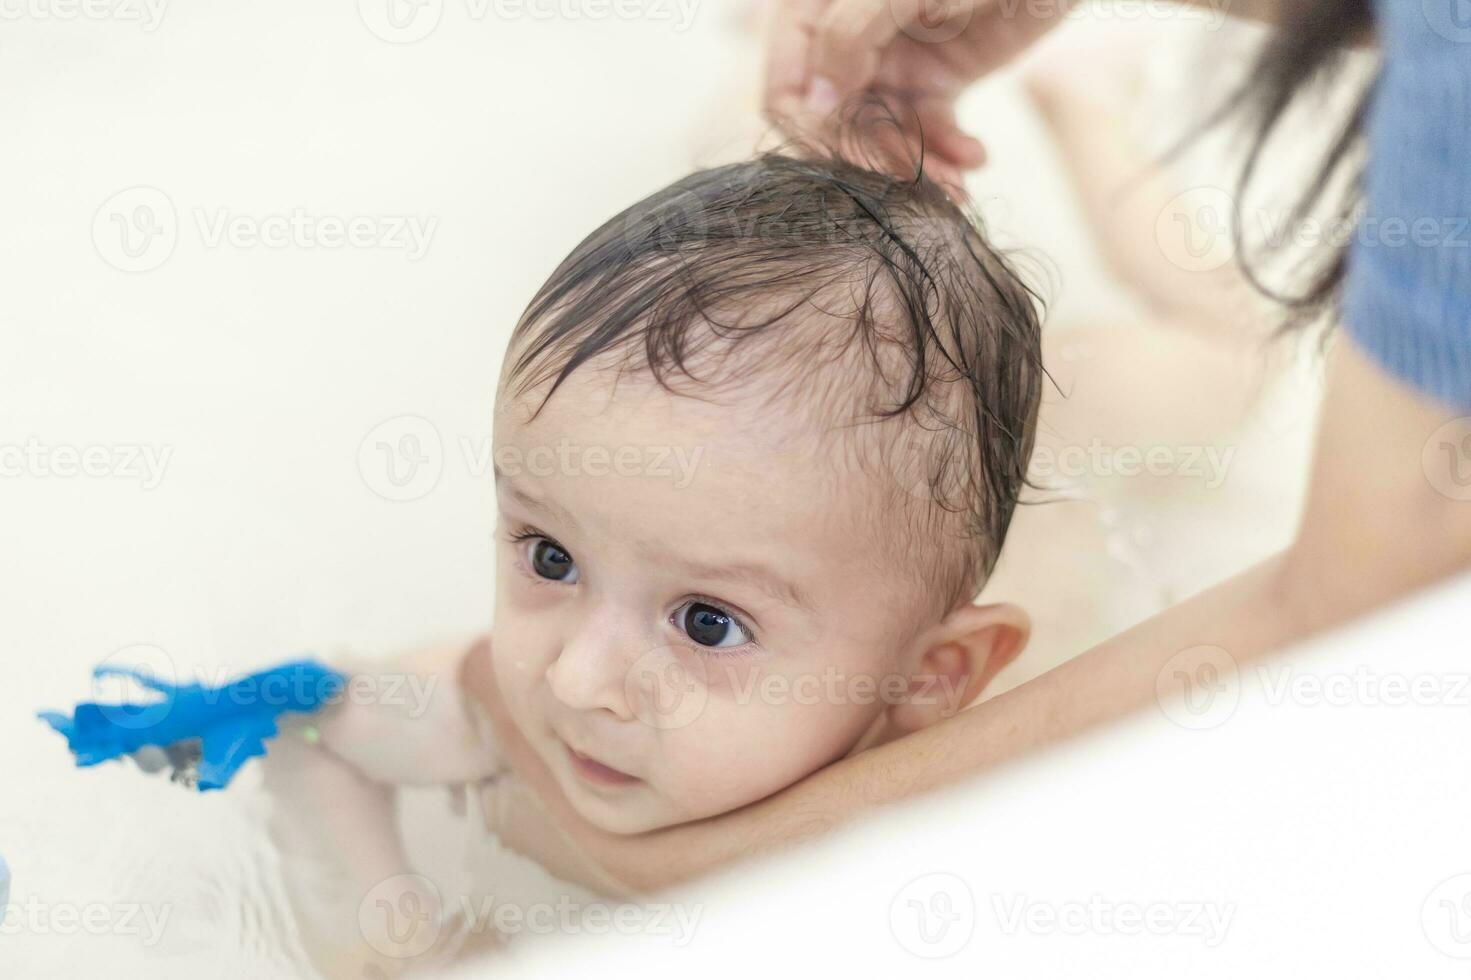 jong mam het wassen haar baby jongens haar- Bij badkamer. moeder het baden haar baby foto